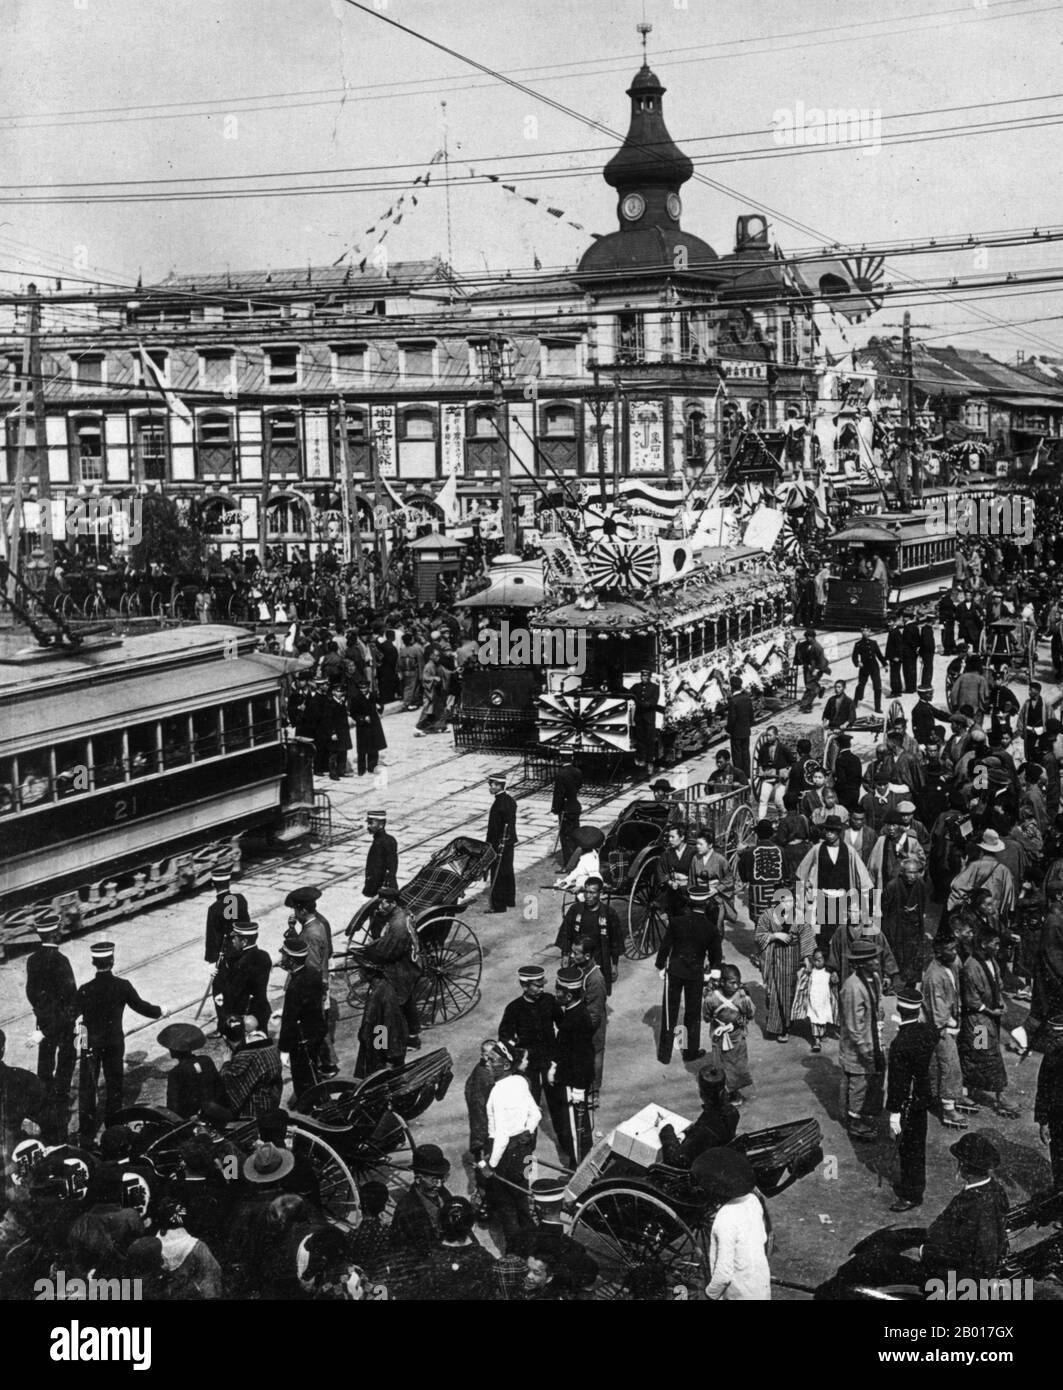 Japón: Una concurrida escena de la calle de Tokio, 23 de noviembre de 1905. A finales del siglo 20th, Tokio ya era una ciudad ocupada y en desarrollo con una gran población y tráfico pesado, incluidos los tranvías de la calle. Foto de stock